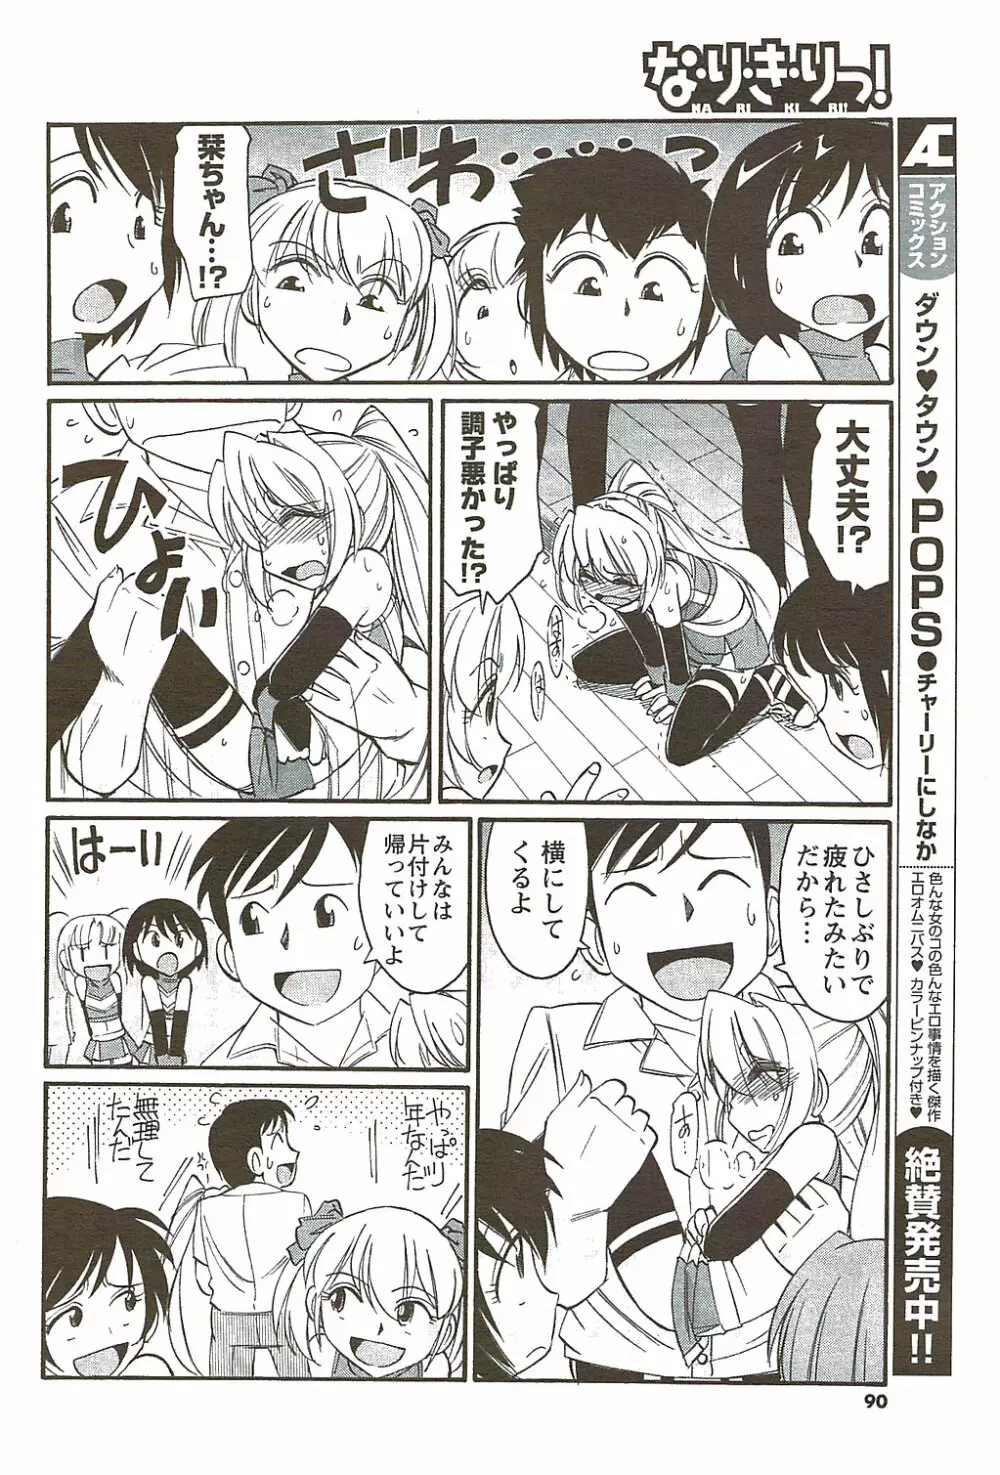 メンズヤングスペシャルIKAZUCHI雷 Vol.11 2009年9月号増刊 90ページ